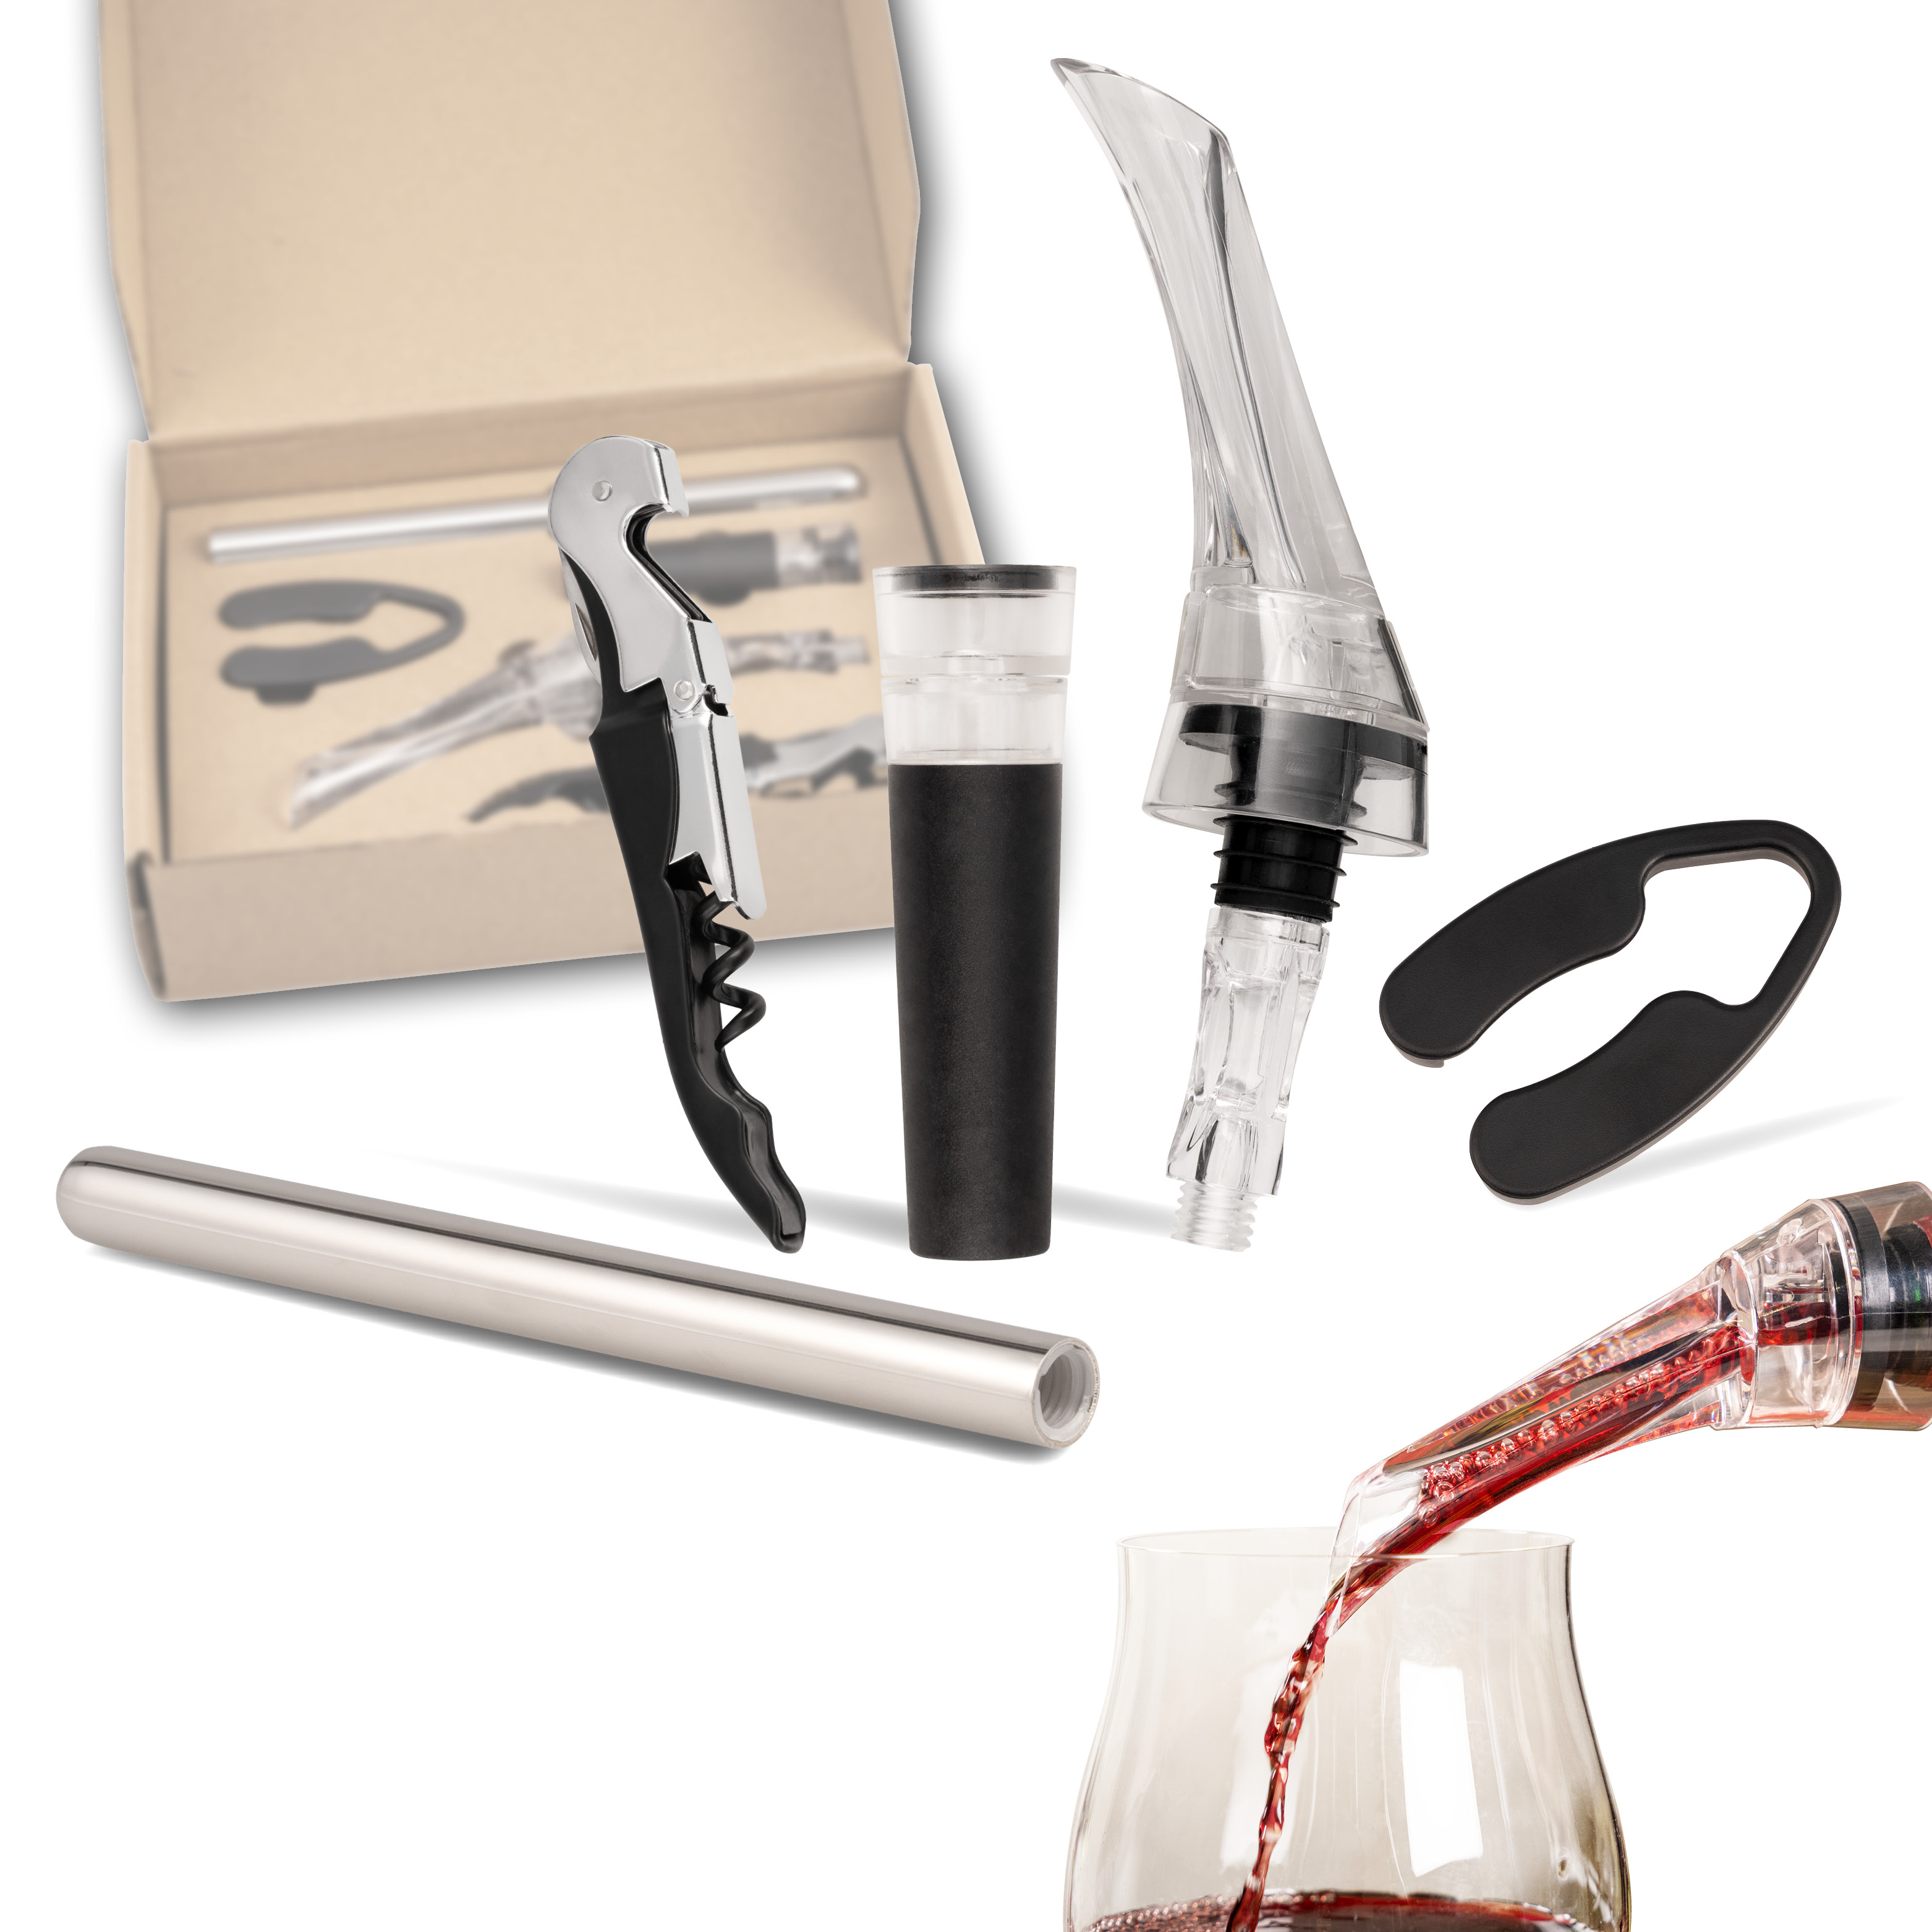 Wein-Set 5-tlg, inkl. Dekanter-Ausgießer mit Verschluss, Kellnermesser, Vakuumverschluss, Kühlstab